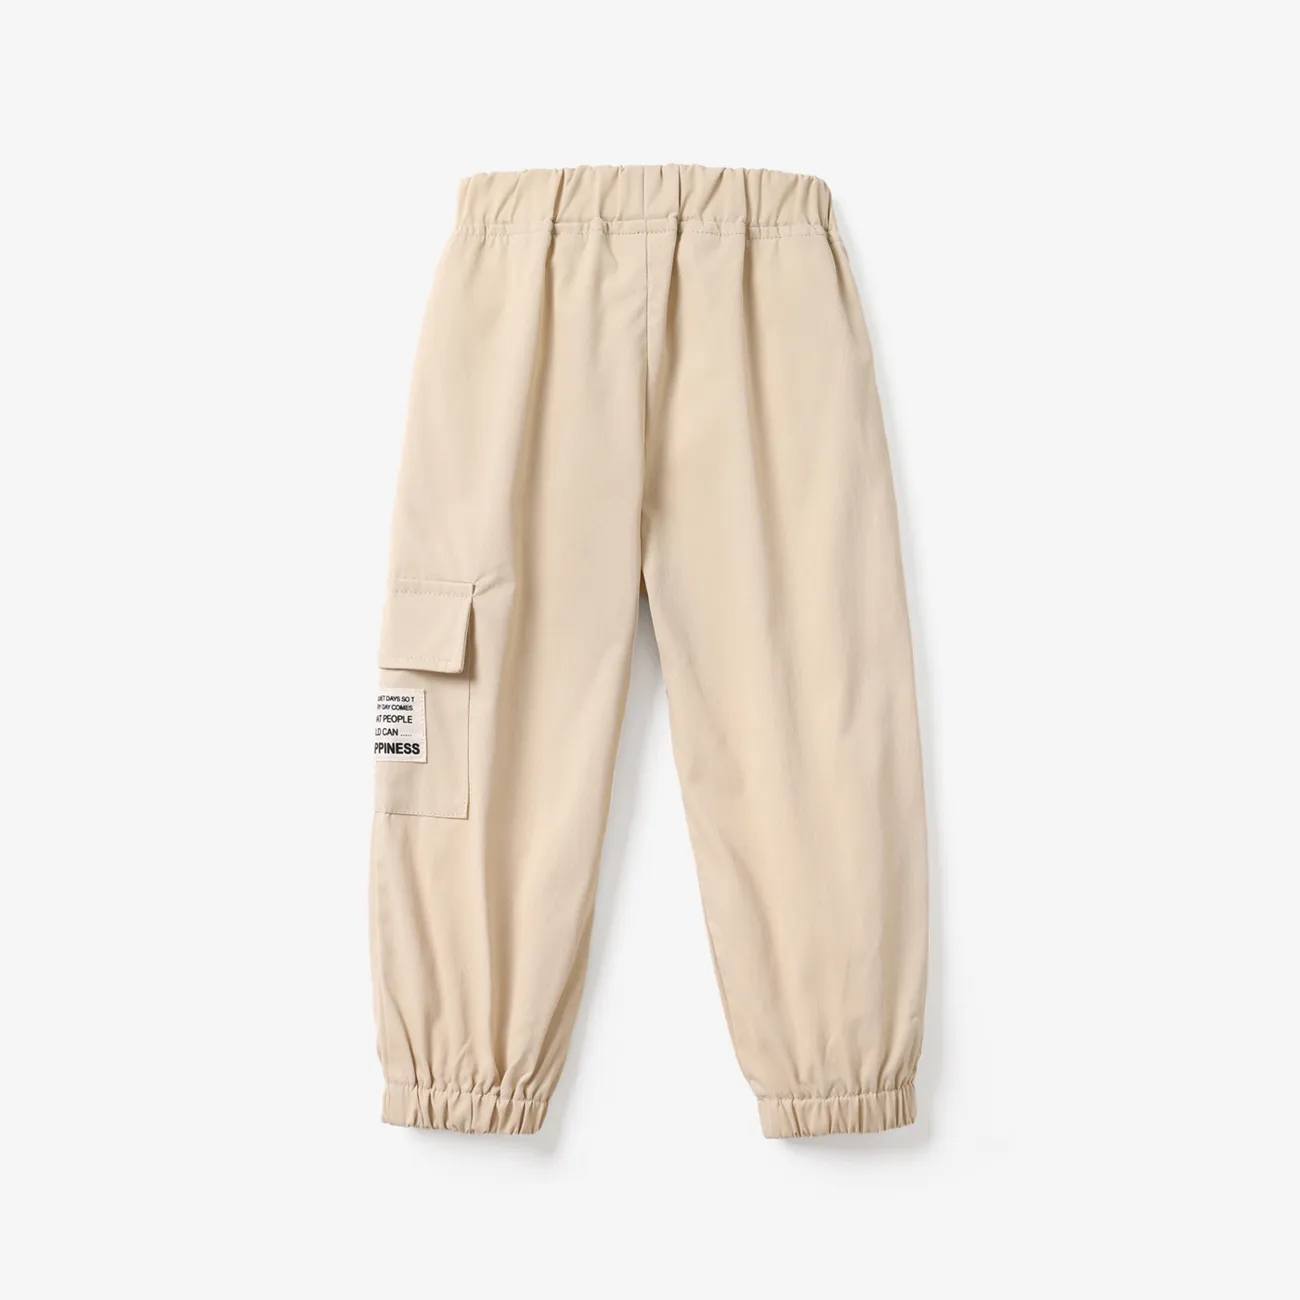 Toddler Boy Casual Pocket Design Elasticized Pants Beige big image 1